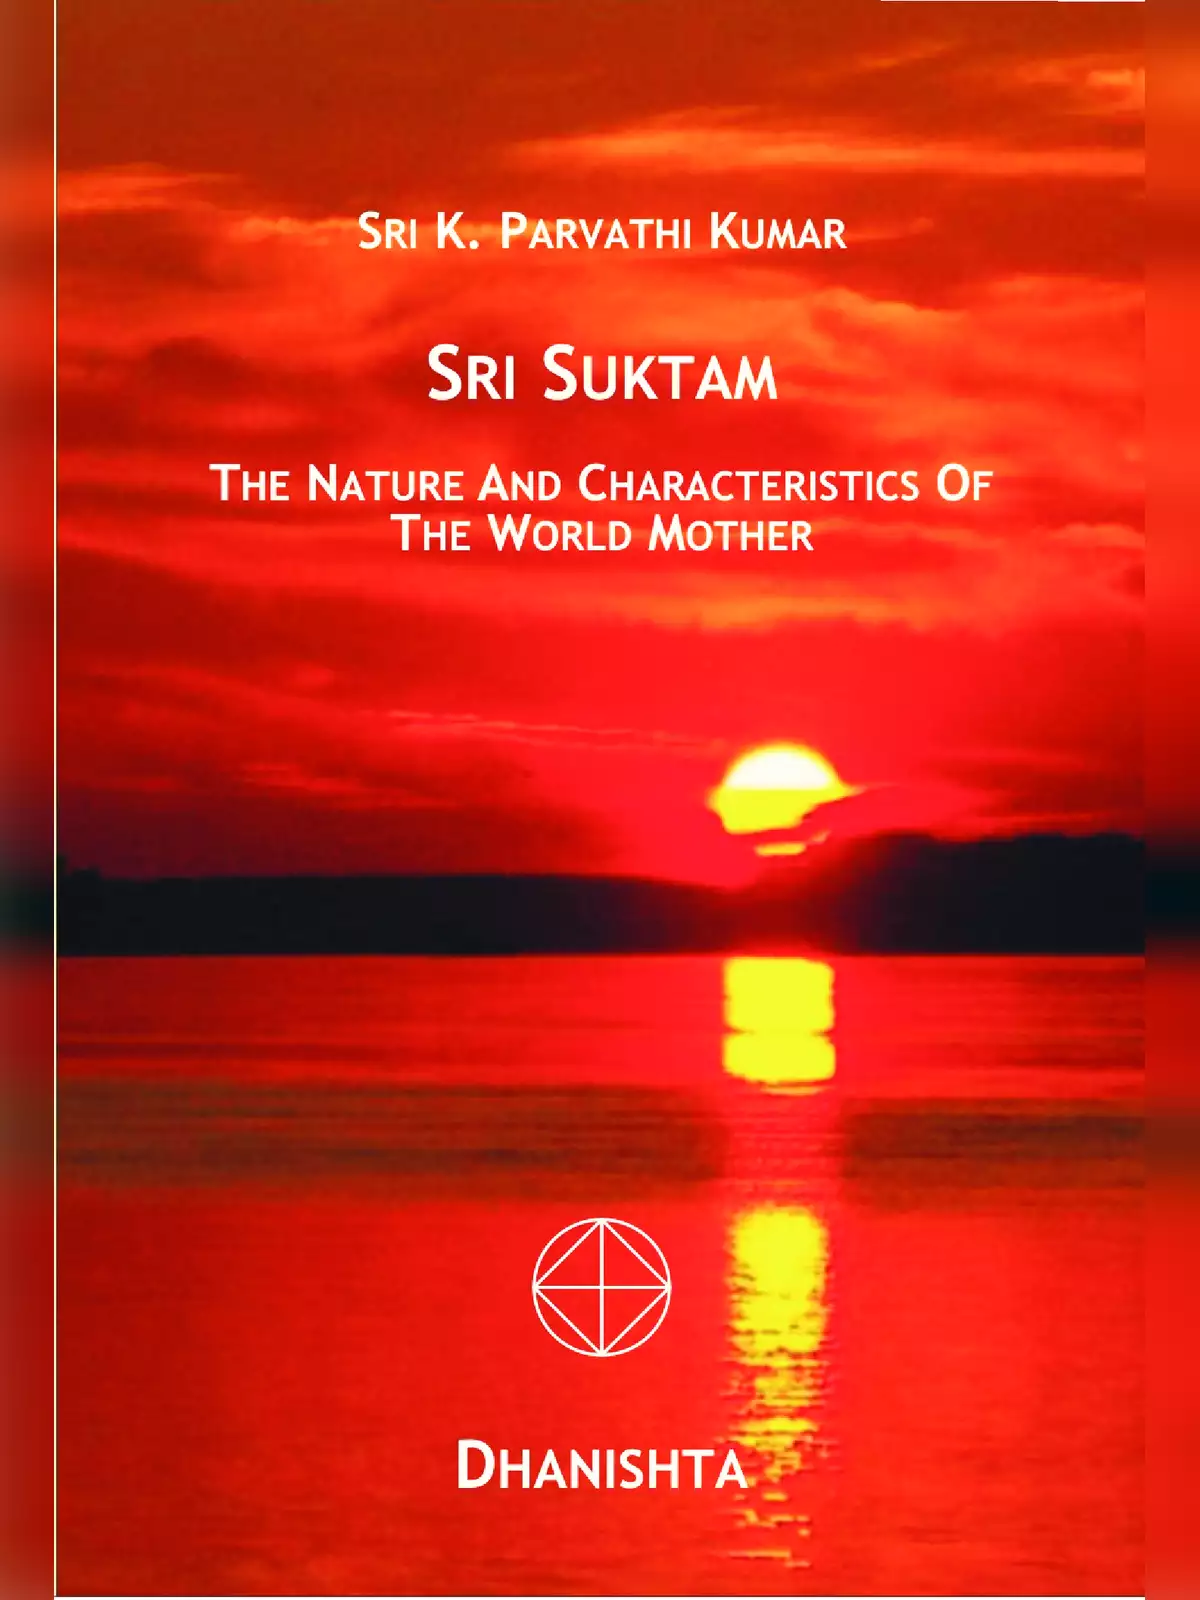 Sri Suktam (श्री सूक्त)